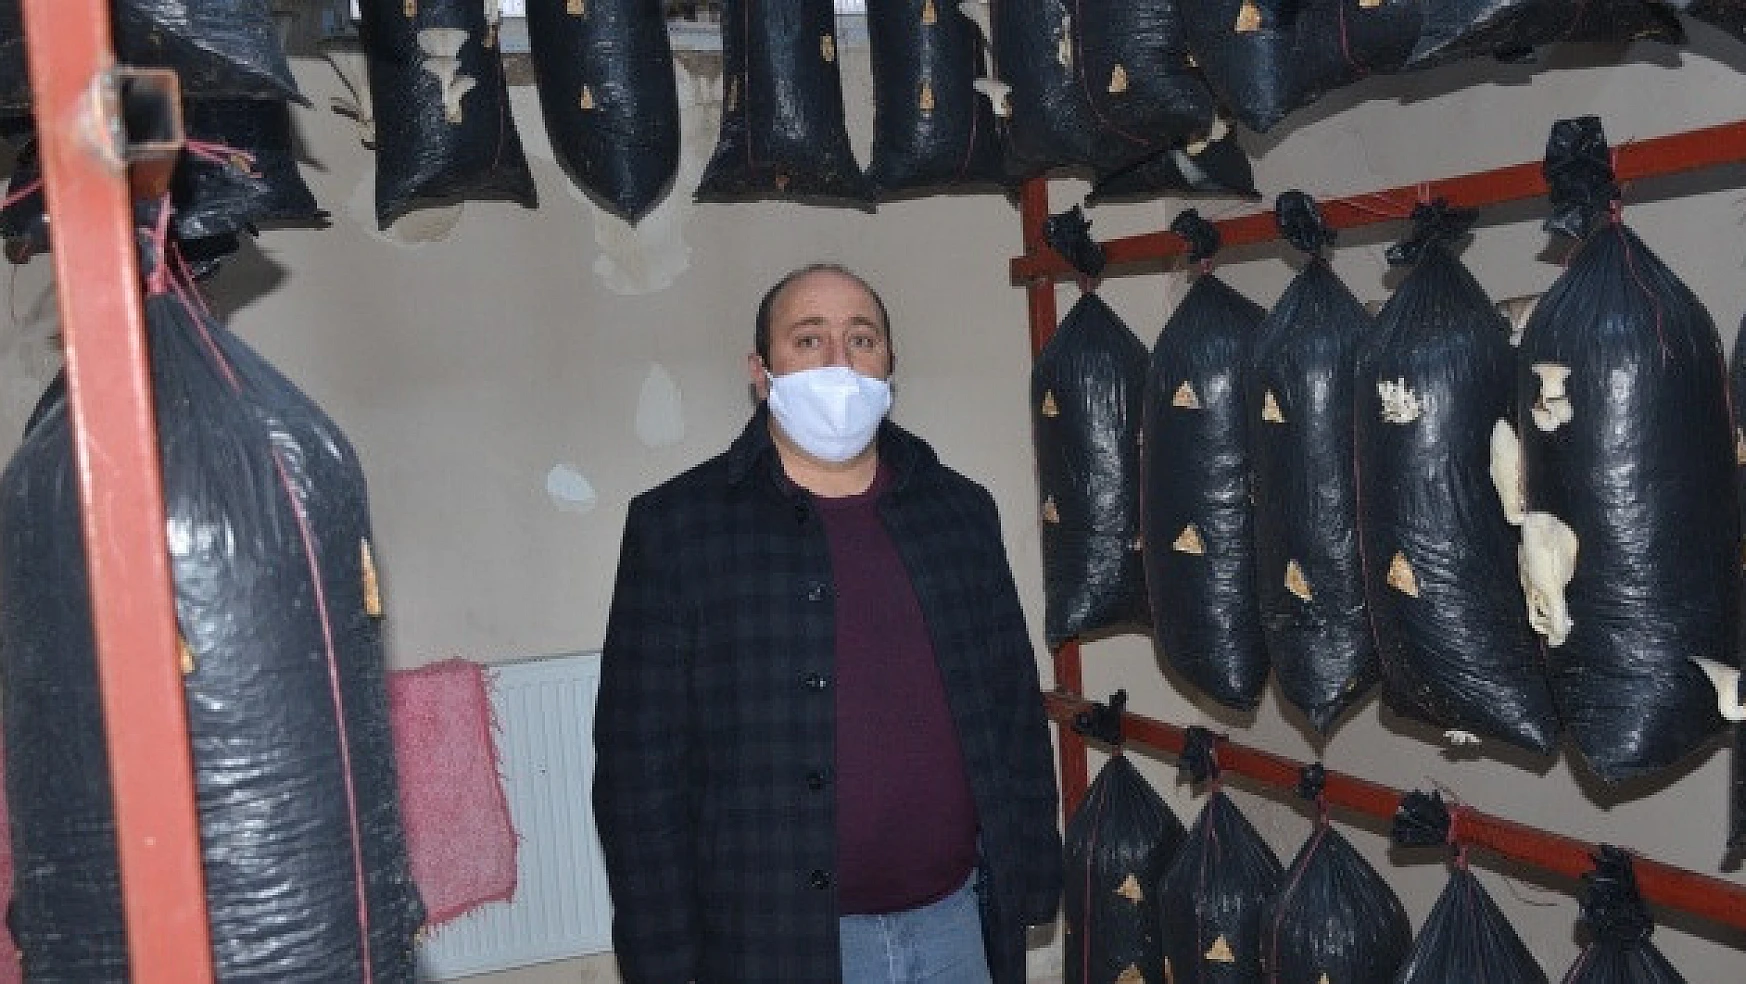 Şırnak'ta mantar üretim tesisi açıldı